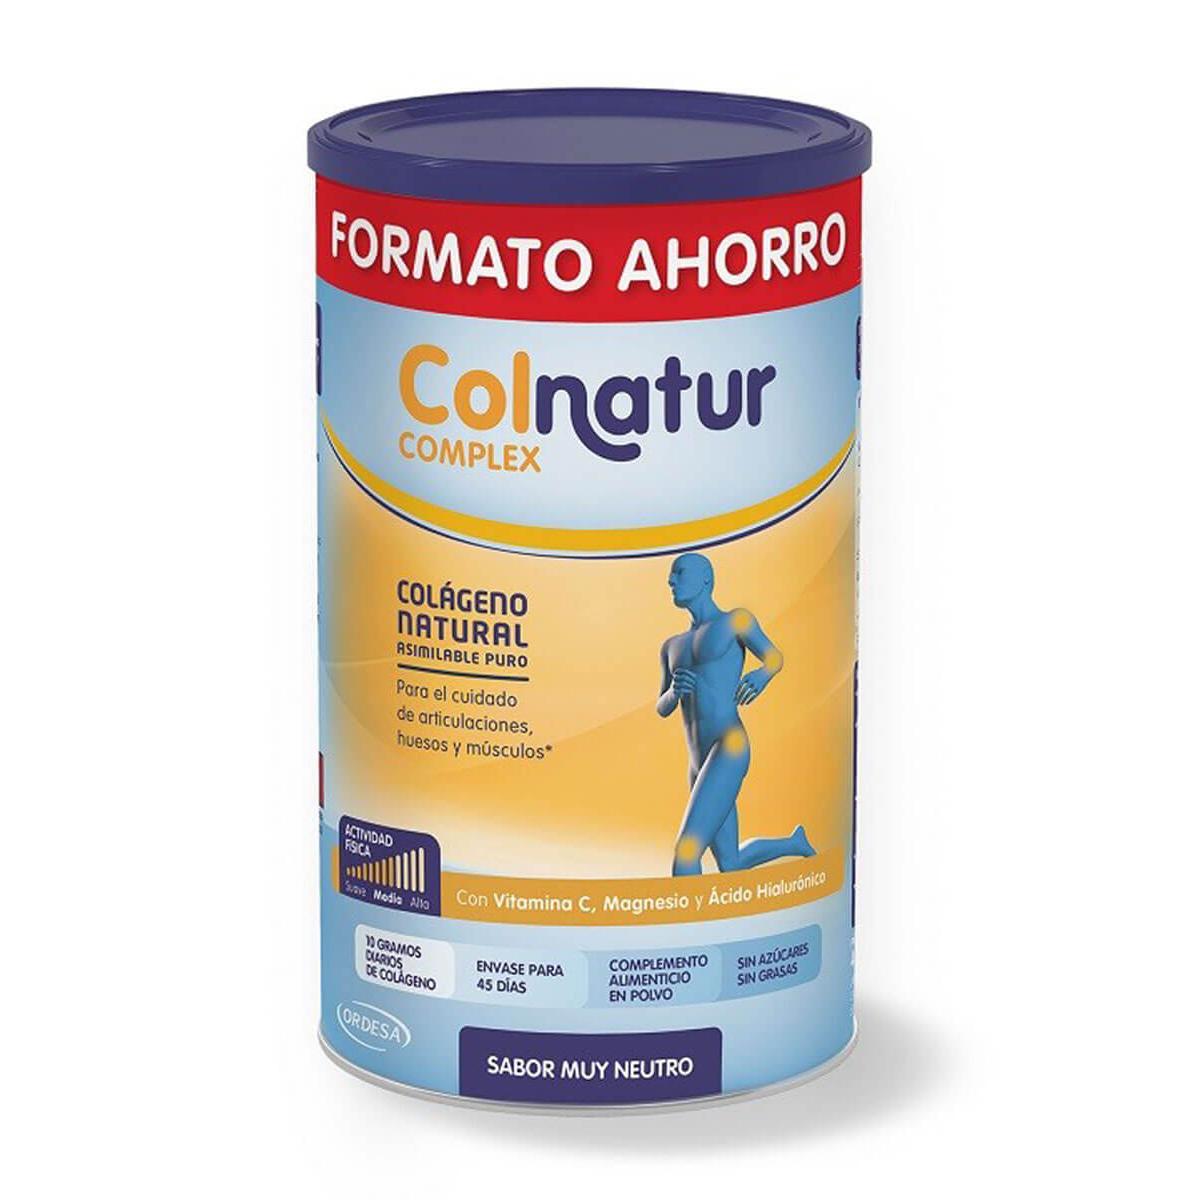 Colnatur - Colnatur complex formato ahorro sabor neutro 495 gr